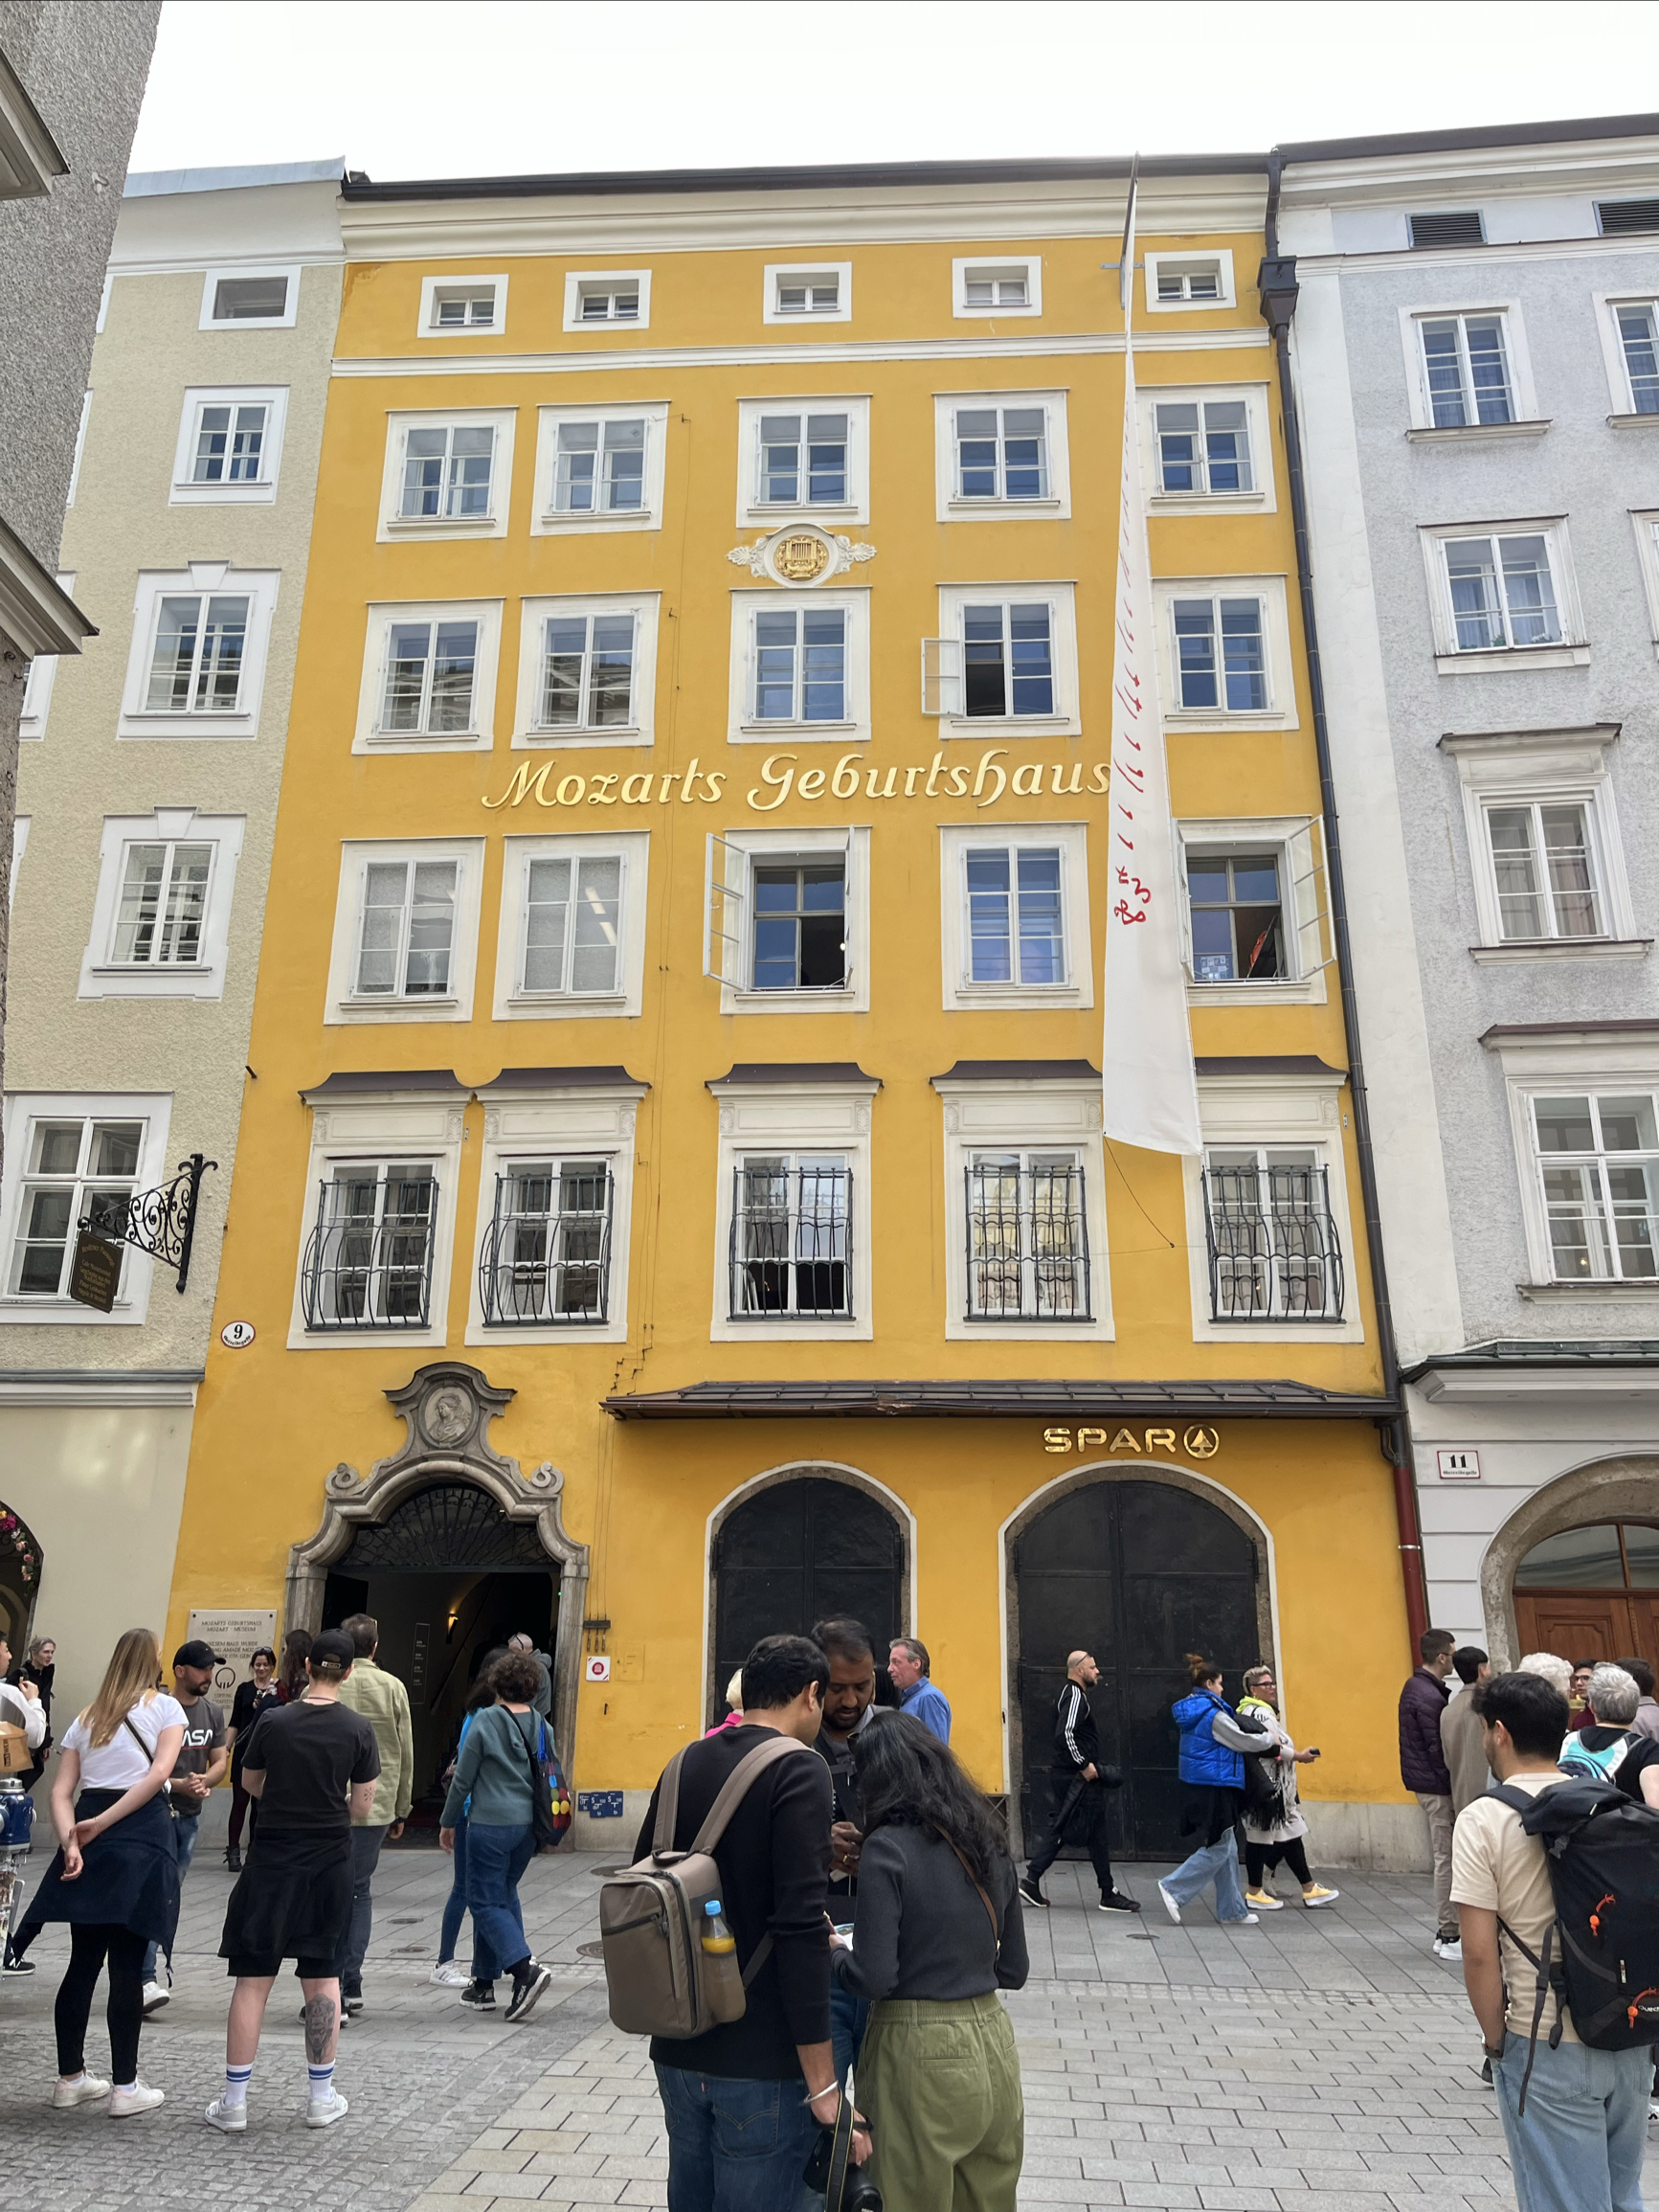 去萨尔茨堡是一定要参观莫扎特故居的。 伟大的奥地利音乐家就出生在这栋黄色的房子里。 房子内的各个空间